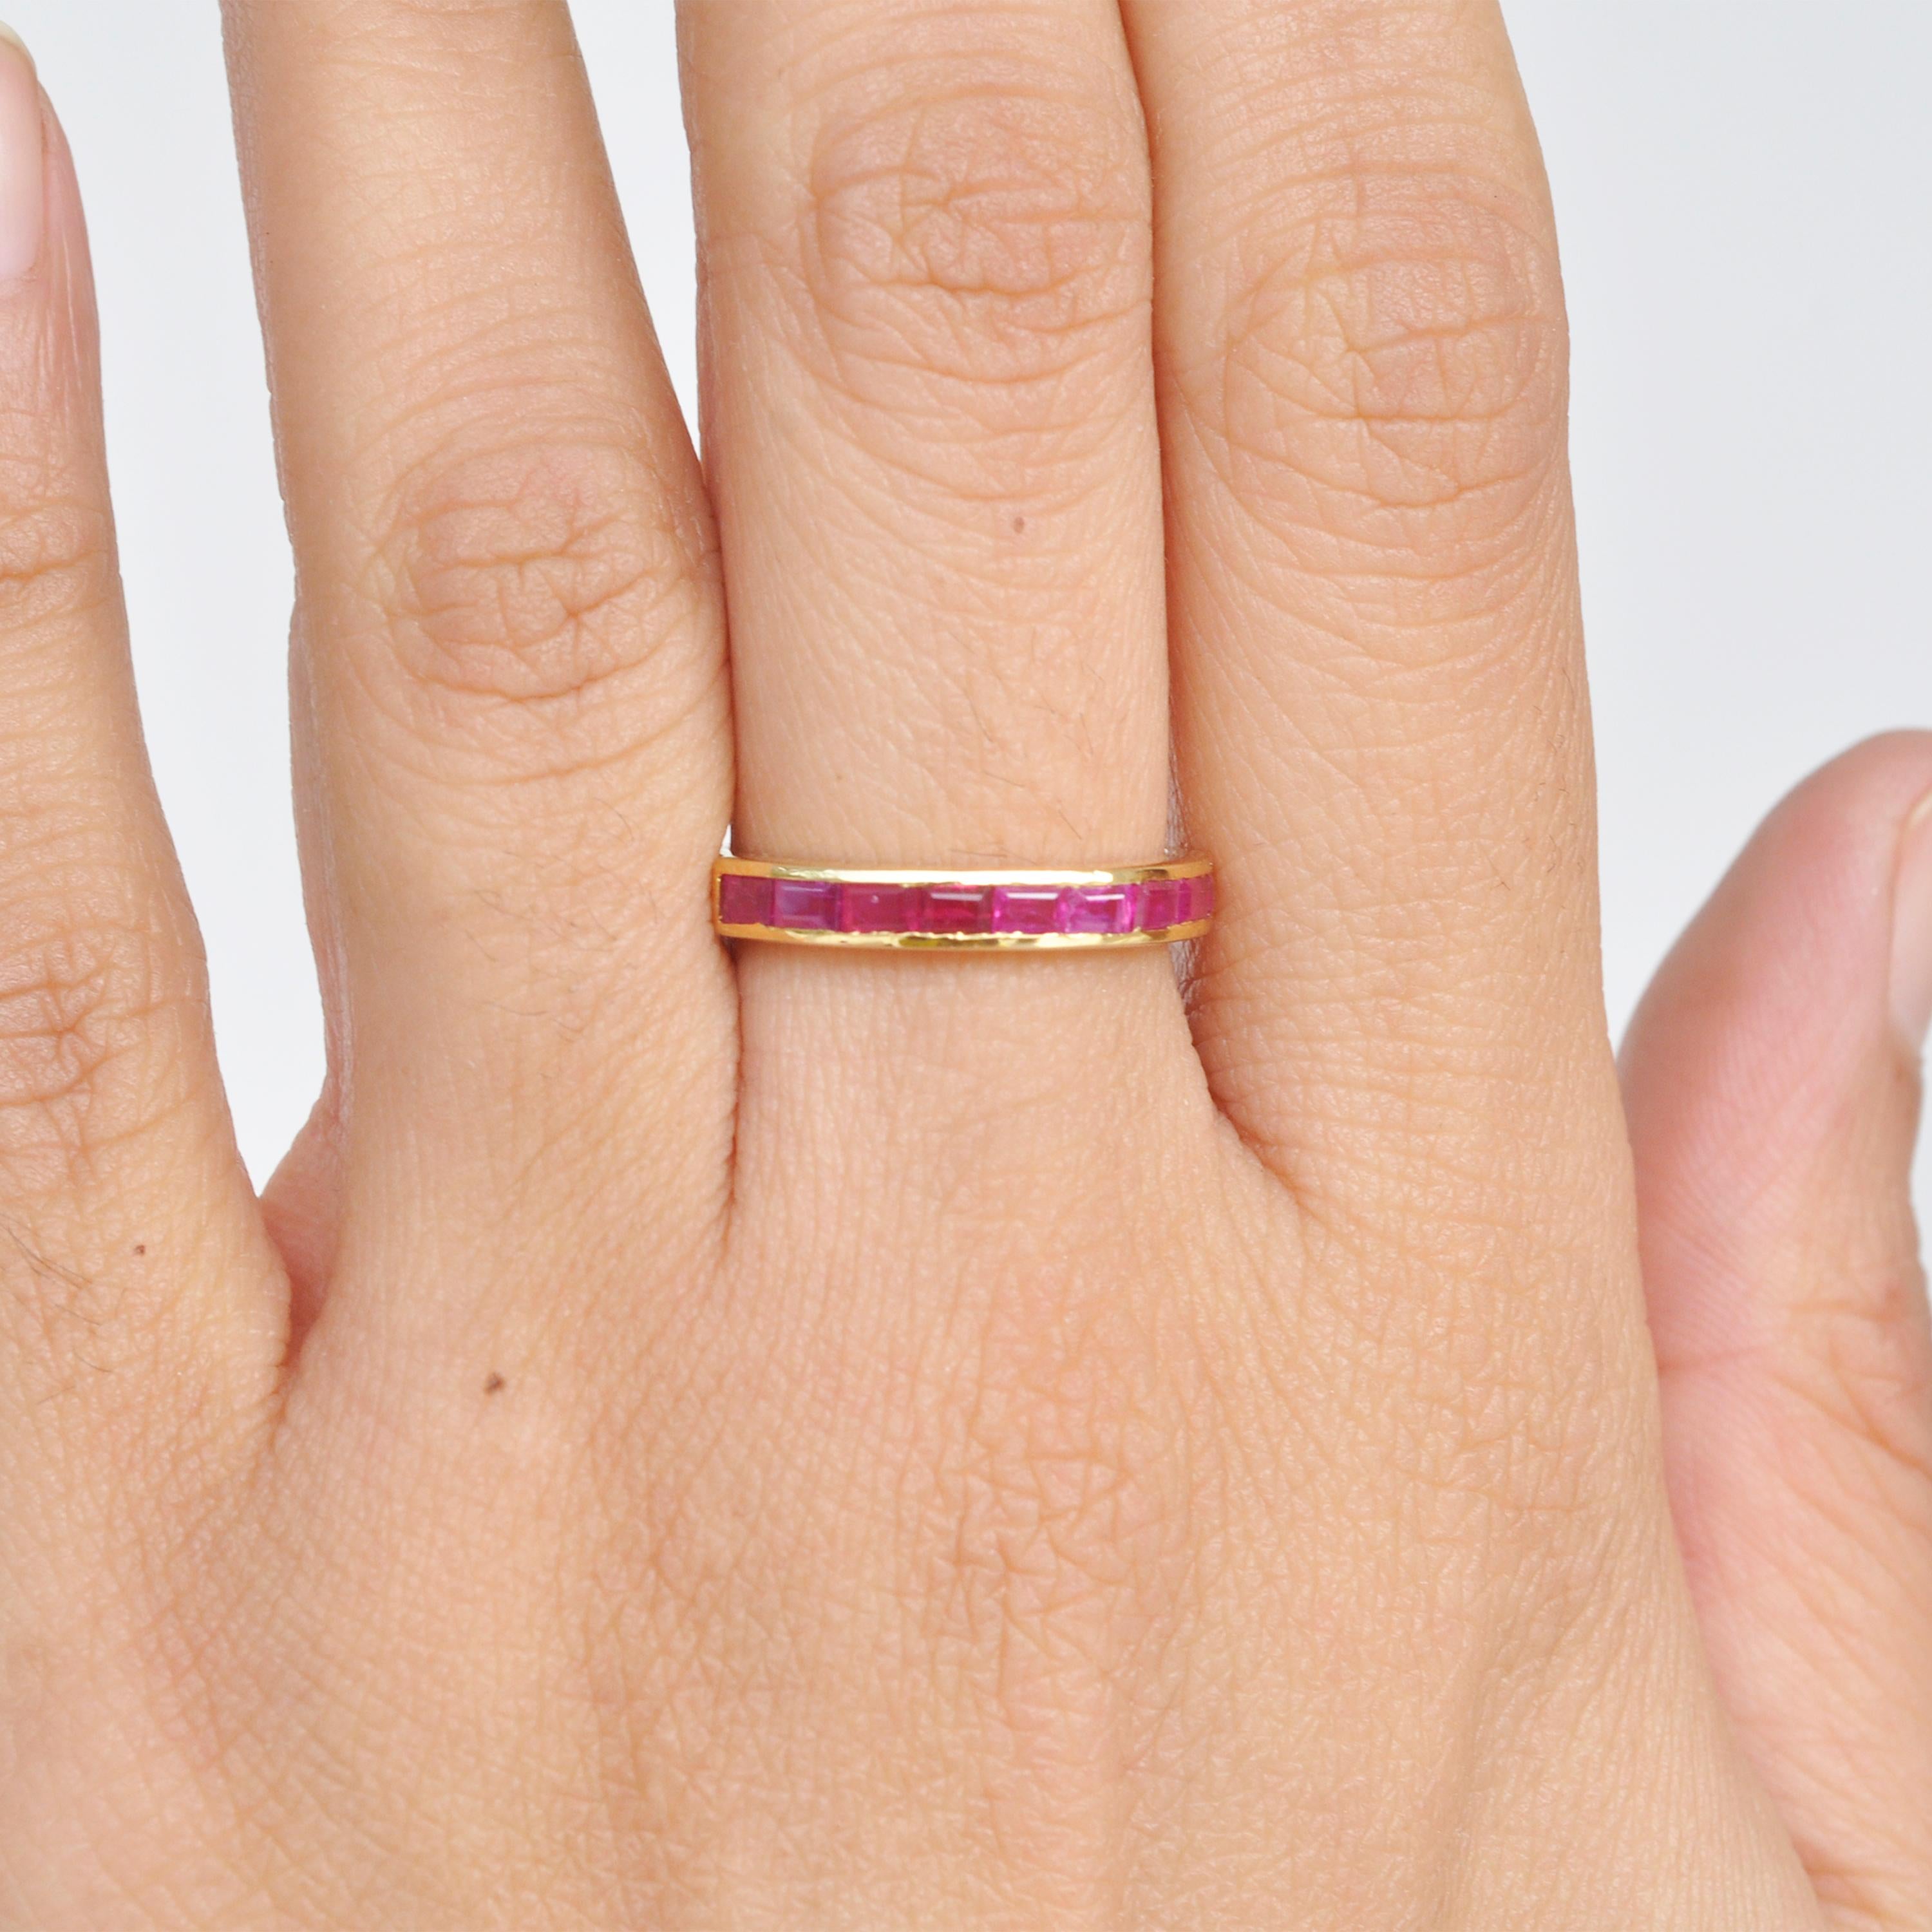 Un anneau classique contemporain en or 18 carats est orné de baguettes de rubis du Mozambique. Les baguettes de rubis naturel utilisées sont lustrées et la qualité est excellente. Cette bague est un régal pour les amoureux des bagues qui pensent que